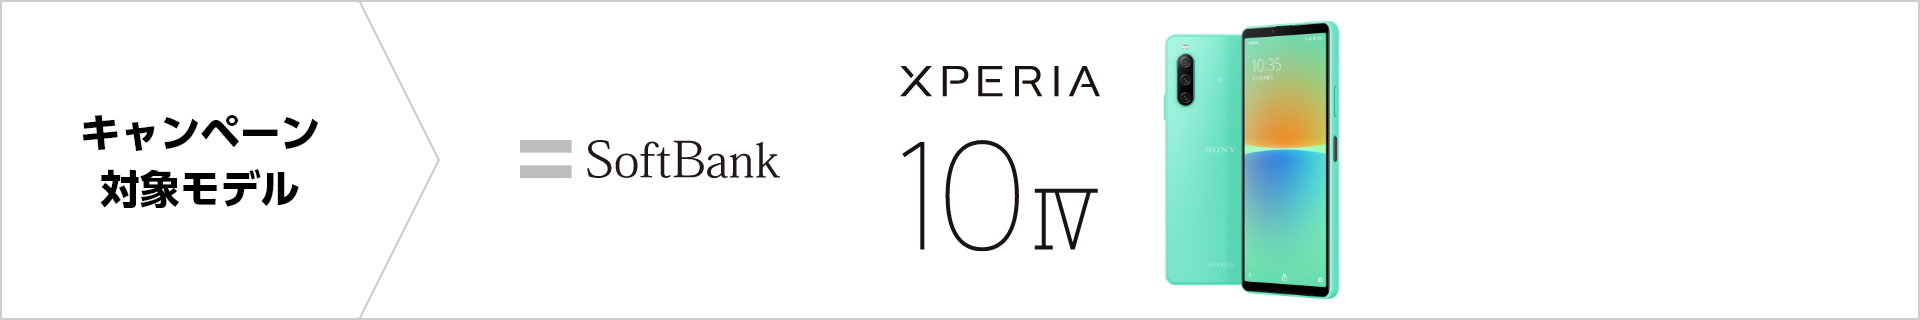 キャンペーン対象モデル SoftBank Xperia 10 IV